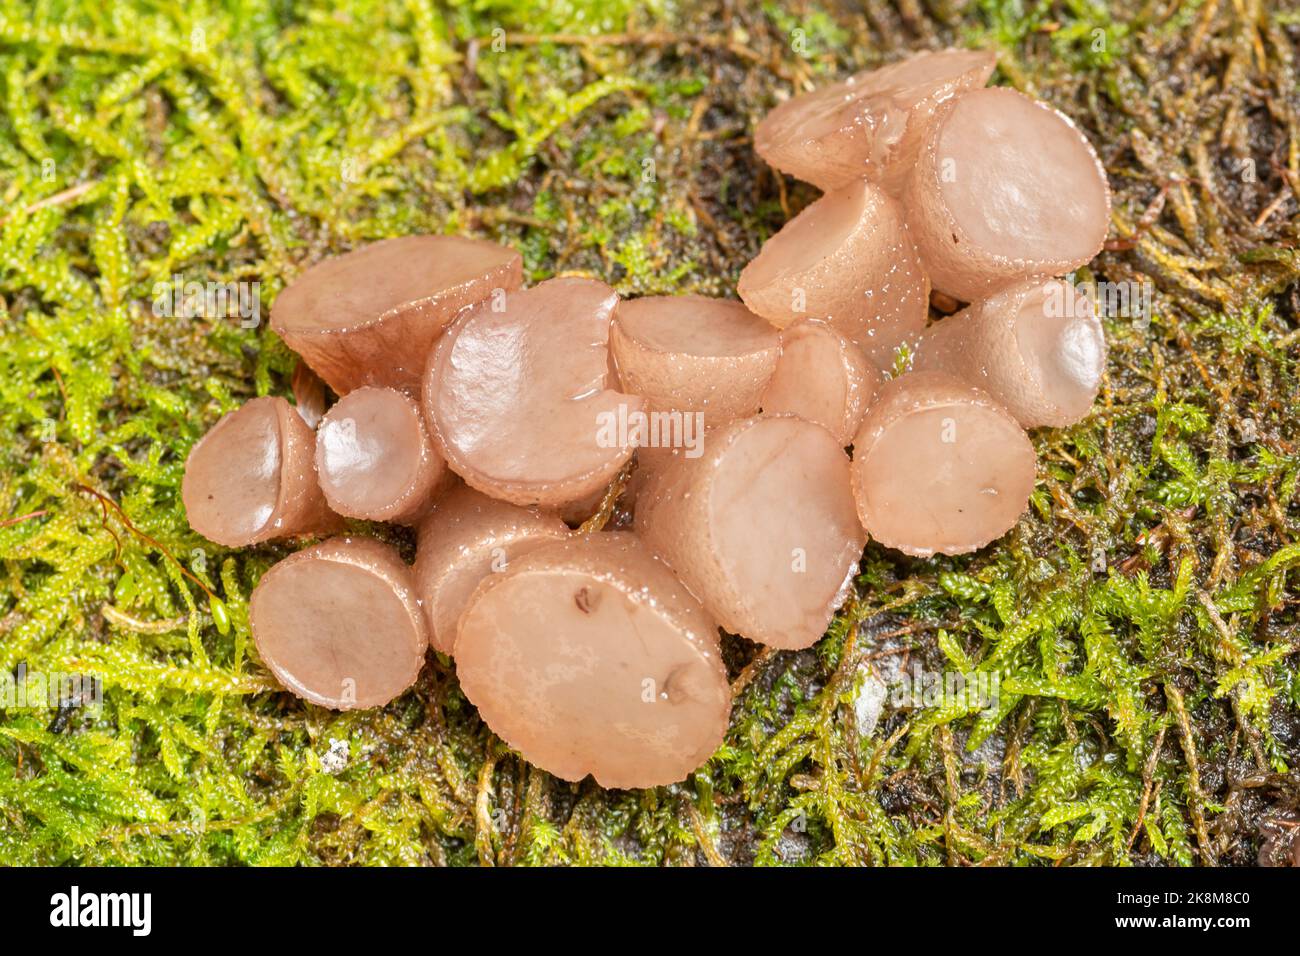 Buchenscheibenpilze (Neobulgaria pura), Gelee-ähnlicher Pilz, der im Herbst oder Oktober auf einem umgestürzten Stamm einer Buche wächst, West Sussex, England, Großbritannien Stockfoto